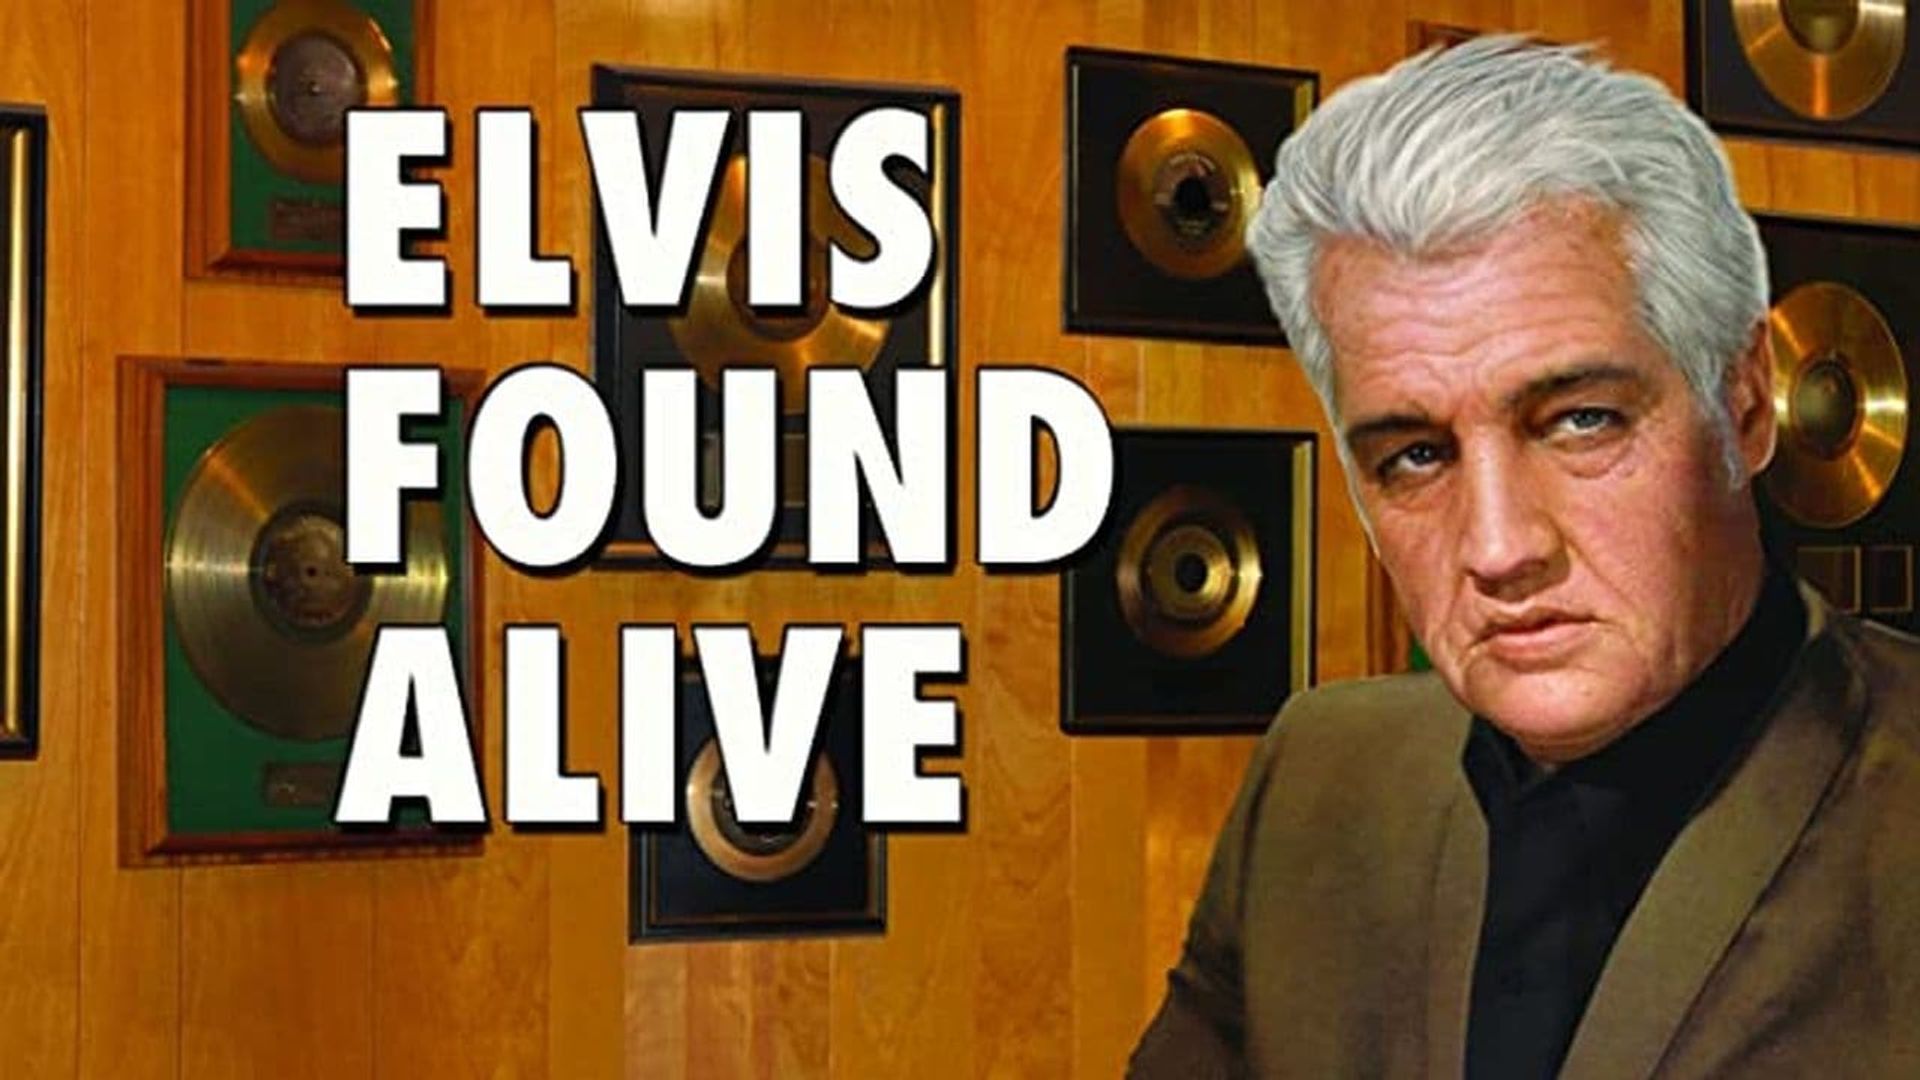 Elvis Found Alive background